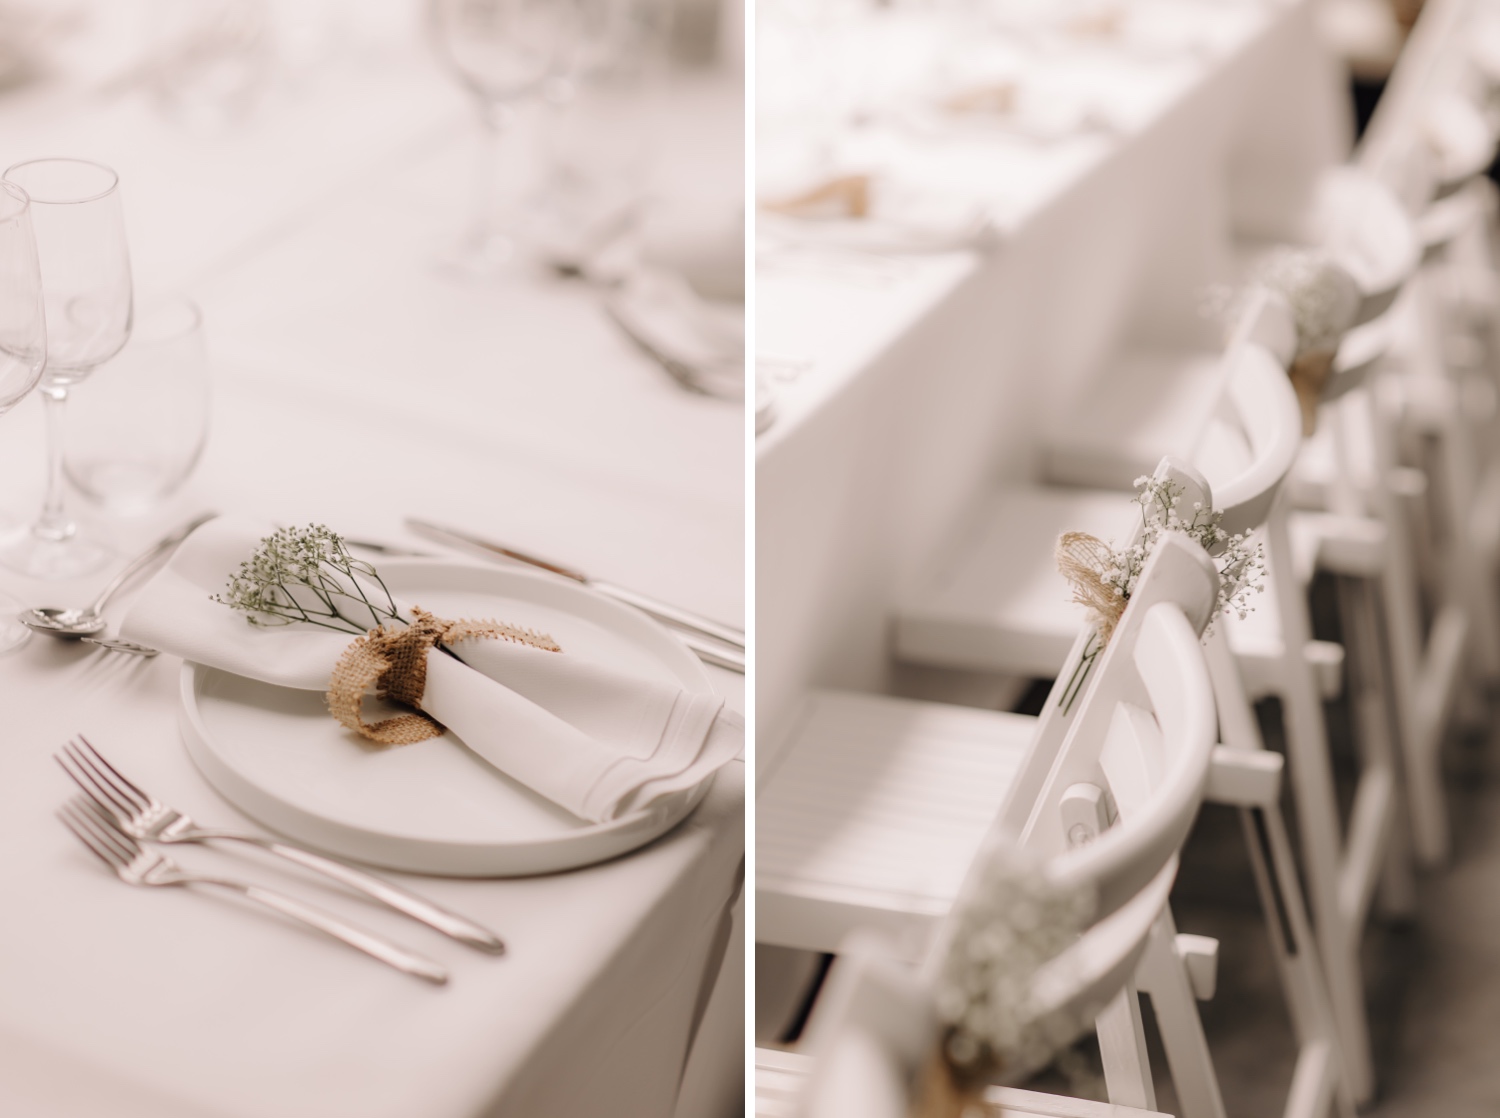 Huwelijksfotograaf Limburg - details van de aangeklede tafel en stoelen